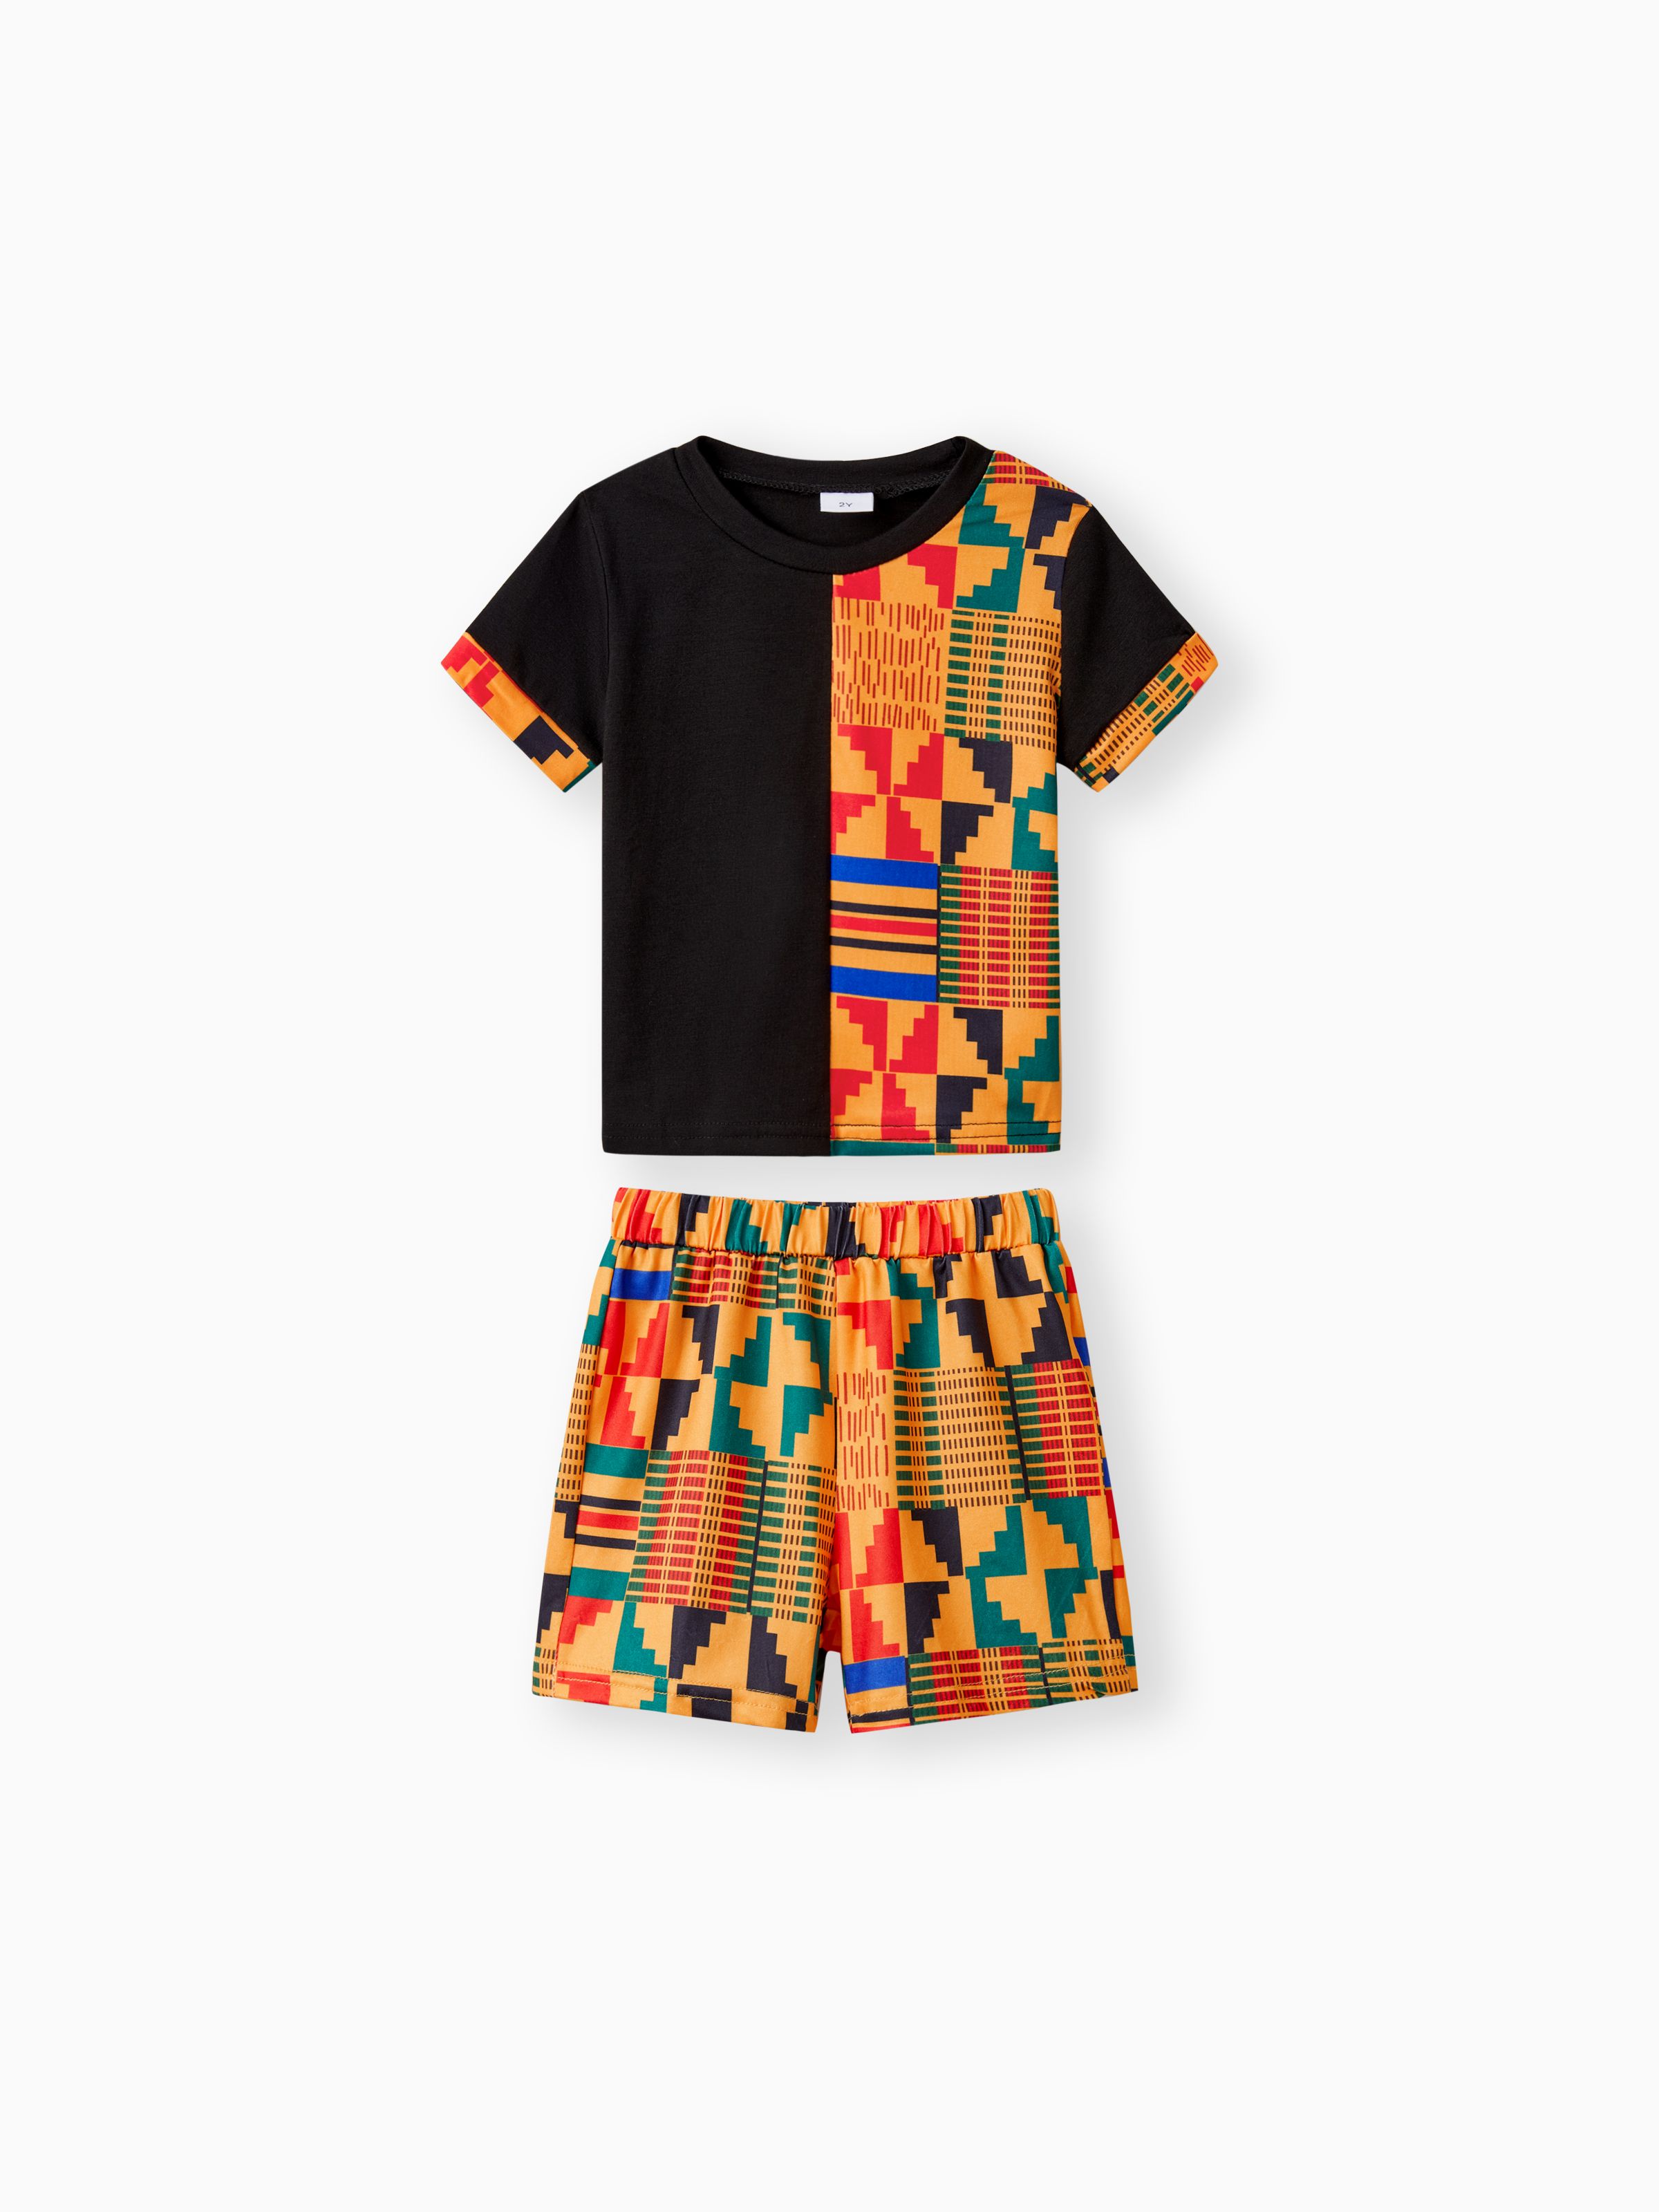 

Bohemia Ethnic Toddler Boy 2pcs Fabric Stitching Shorts Set